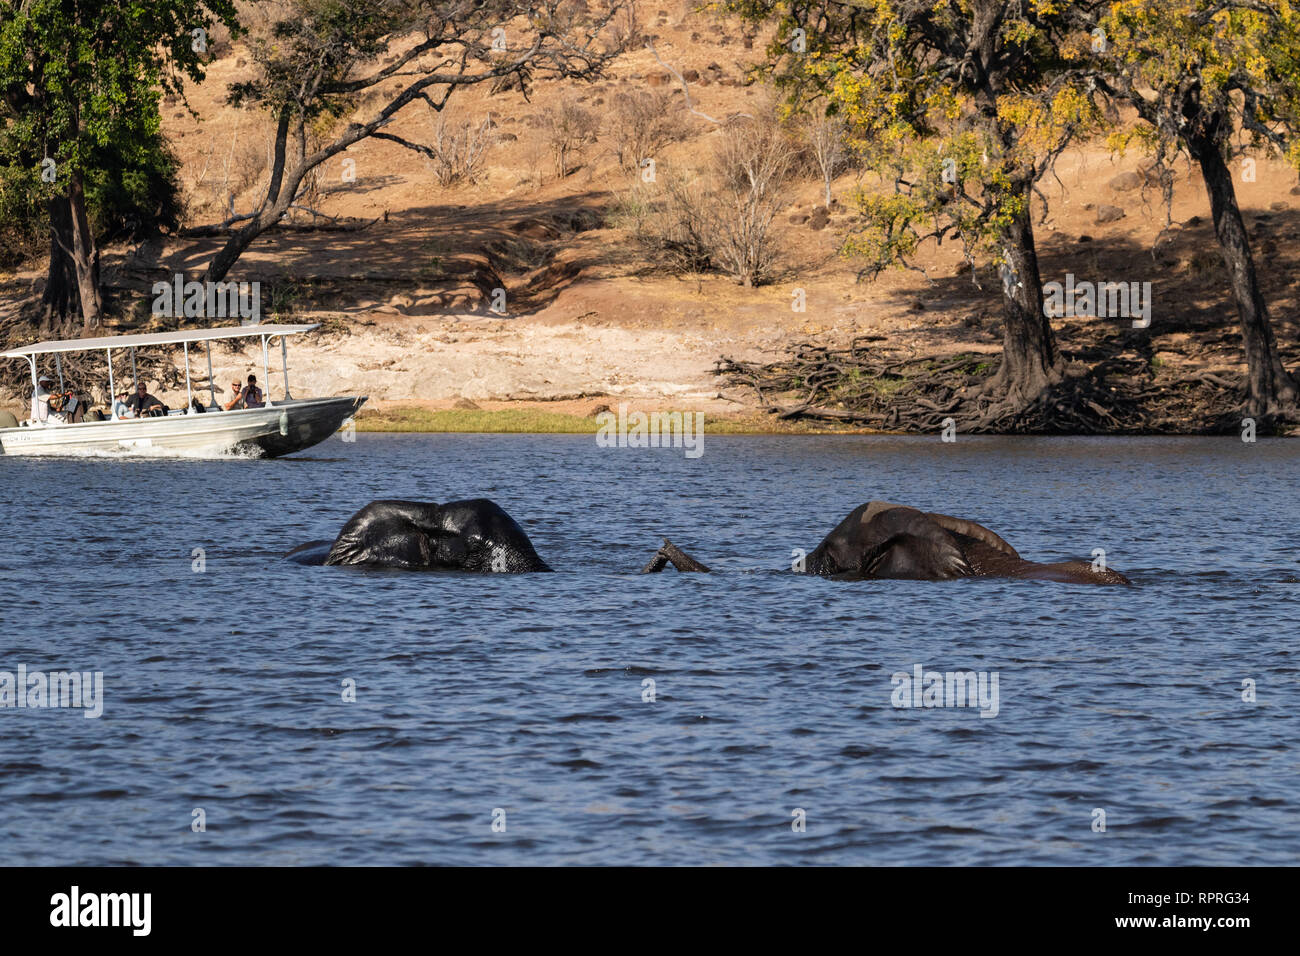 Dos elefantes machos juegan peleando y nadando en el río, mientras que un barco turístico pasa en el fondo del Parque Nacional Chobe, Kasane, Botswana Foto de stock